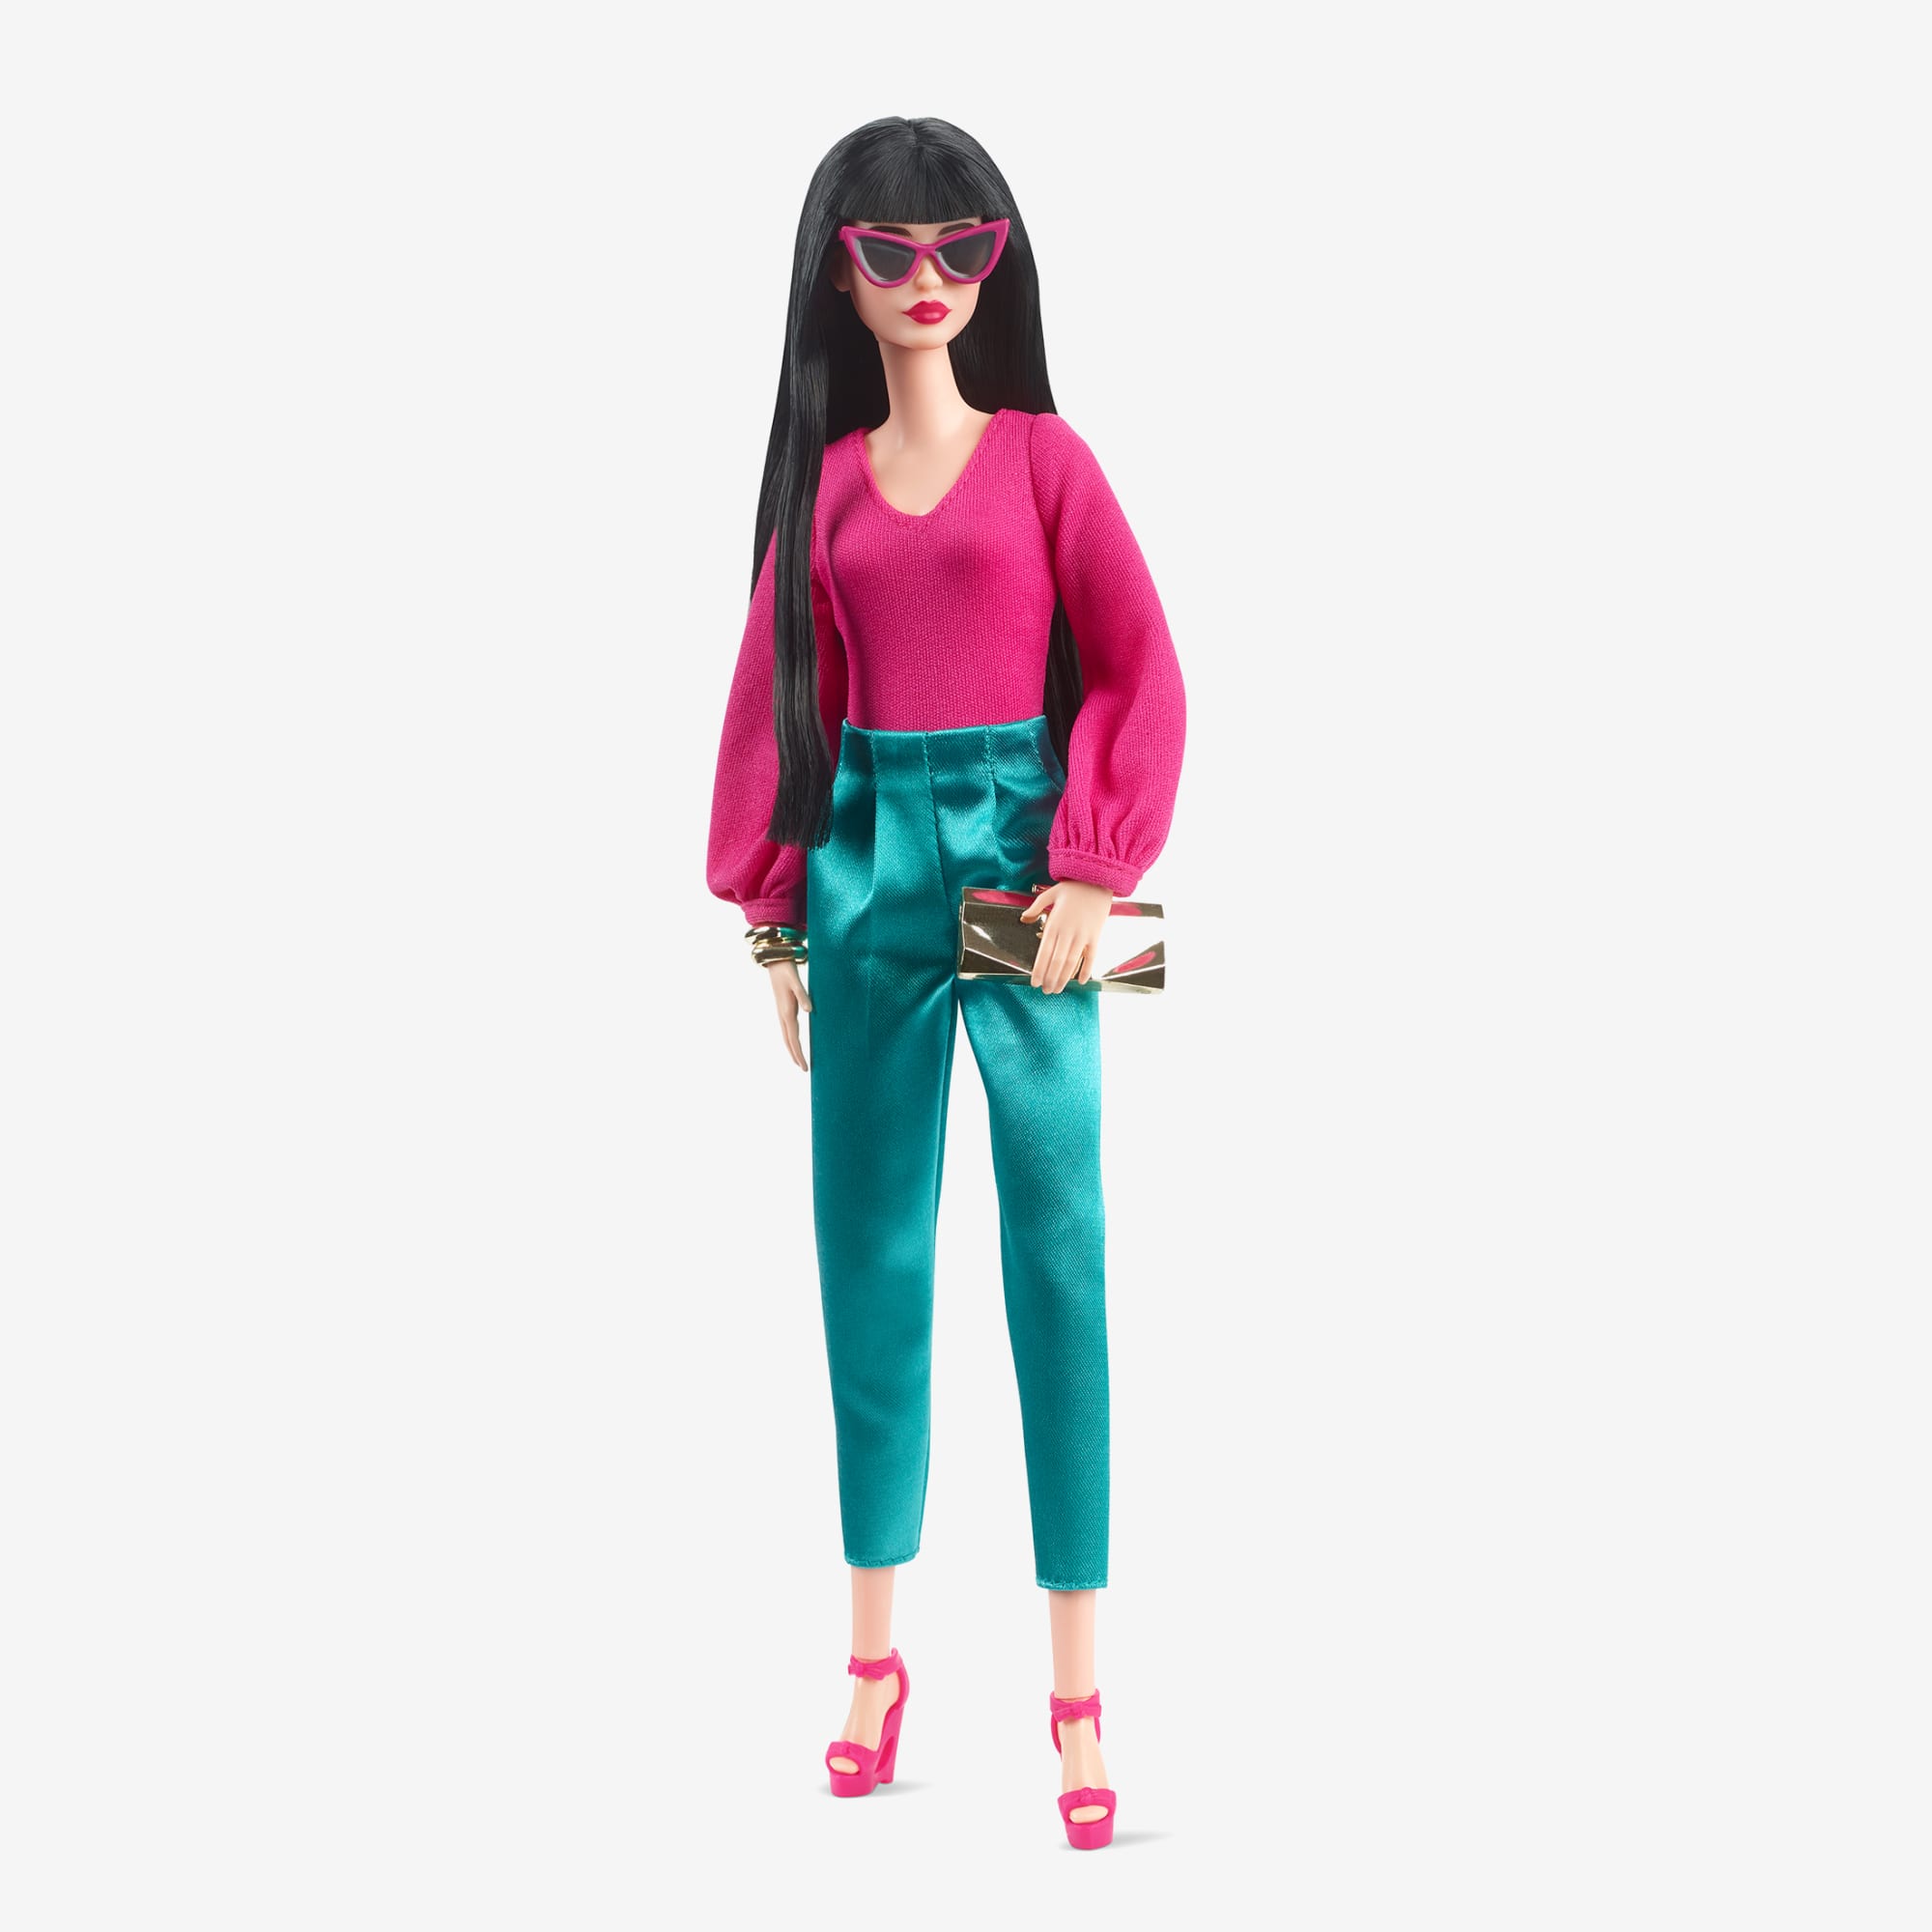 Barbie Looks Signature Looks Doll Multicolor